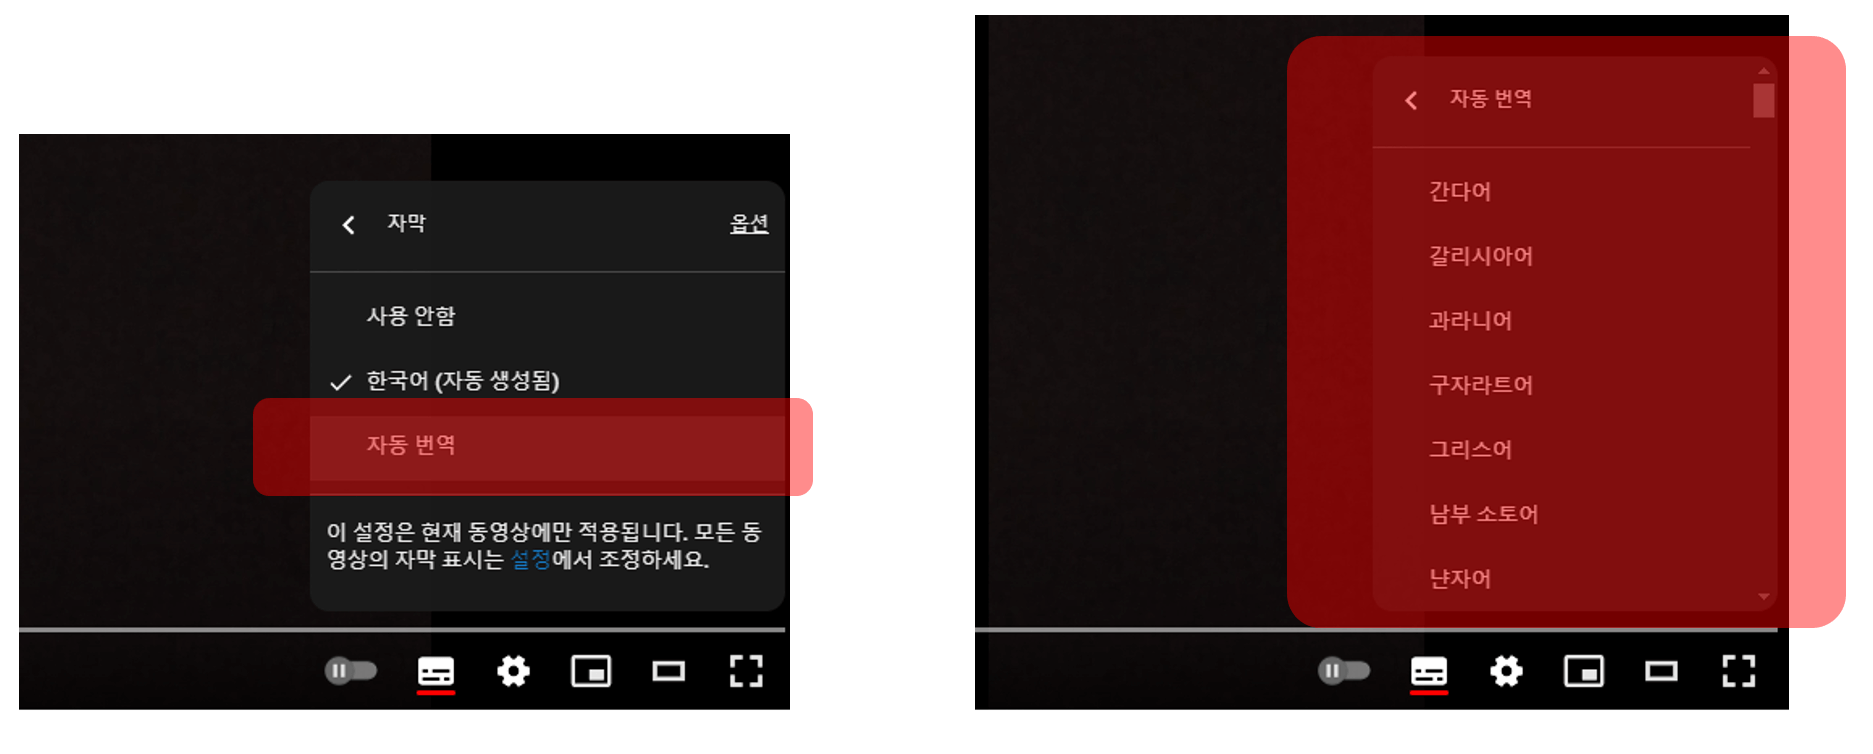 유튜브 자동 자막 설정하기